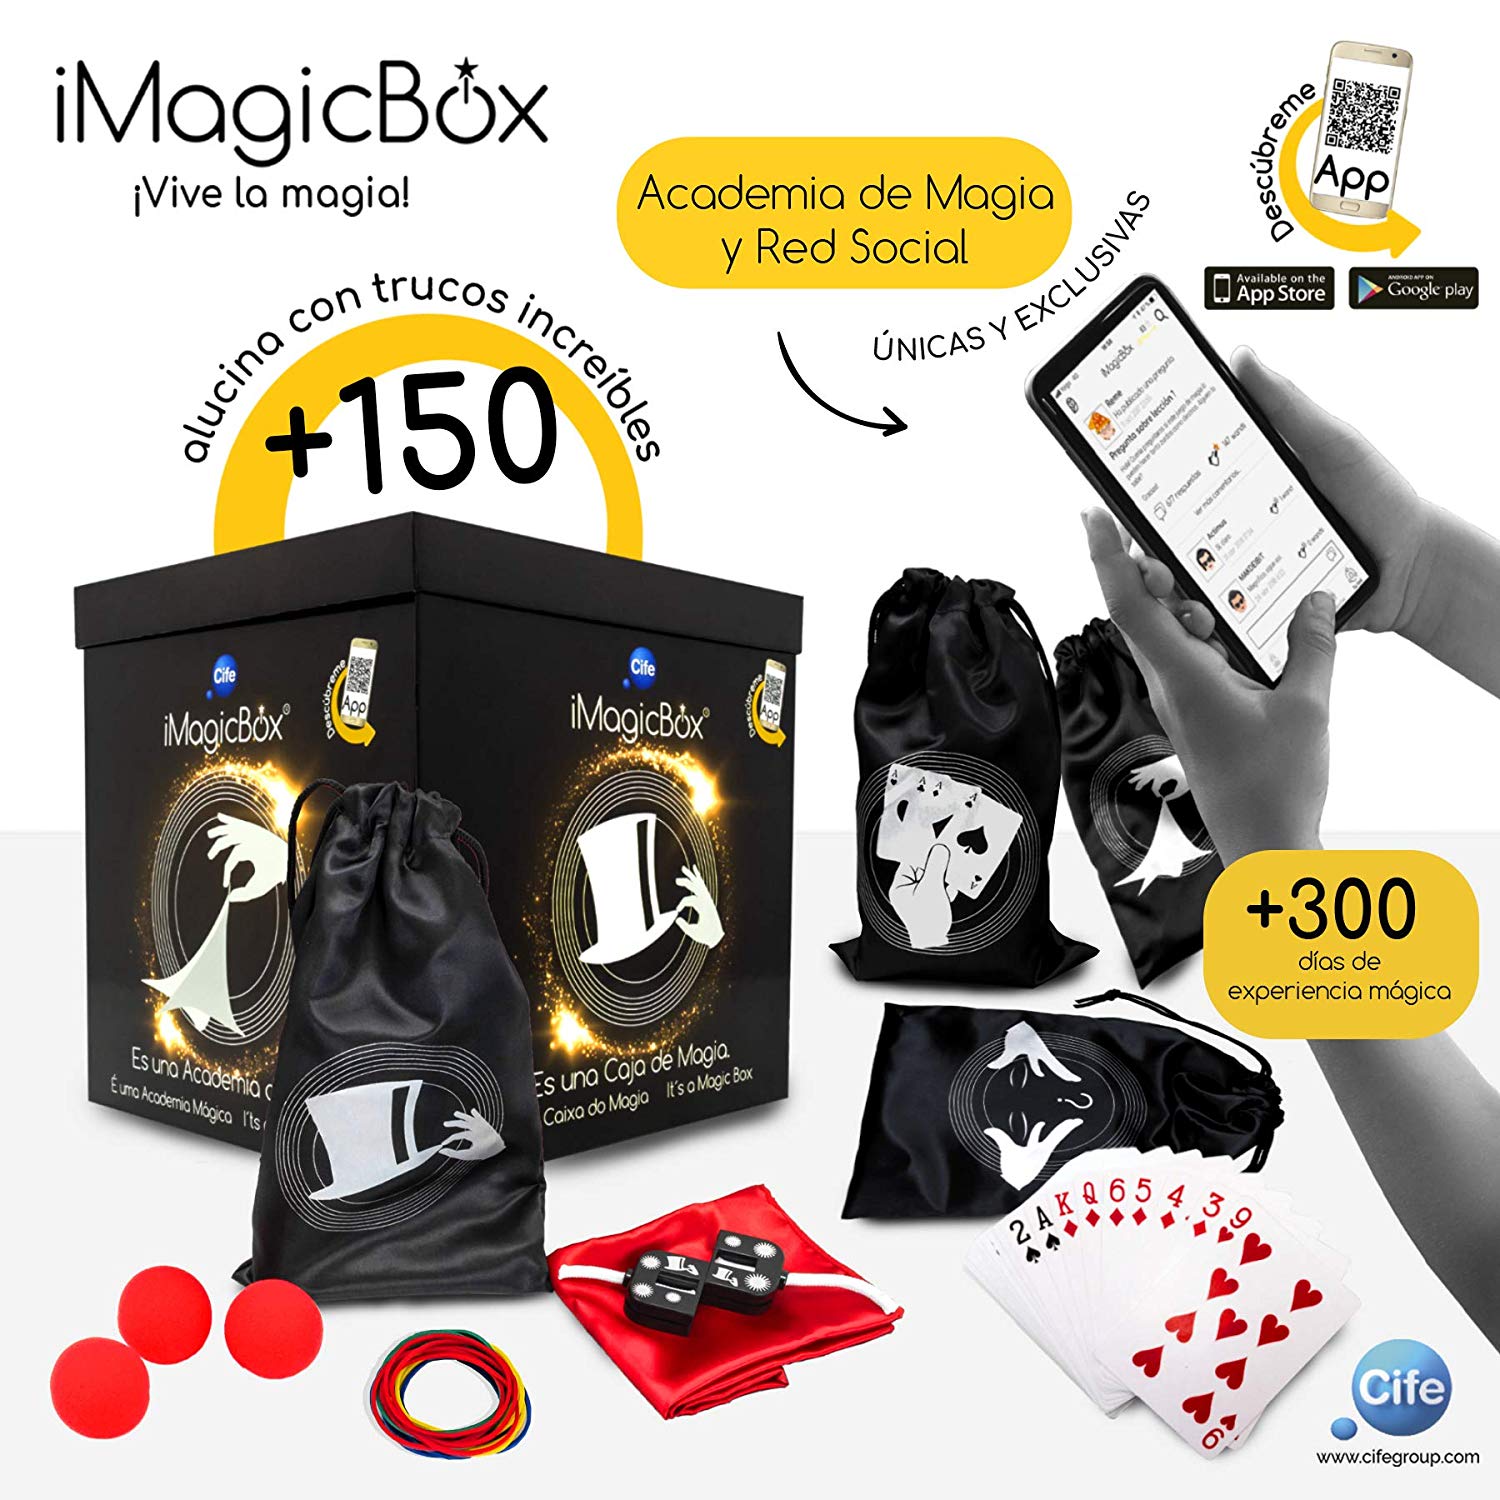 Cubo de Magia iMagicBox solo 24,95€